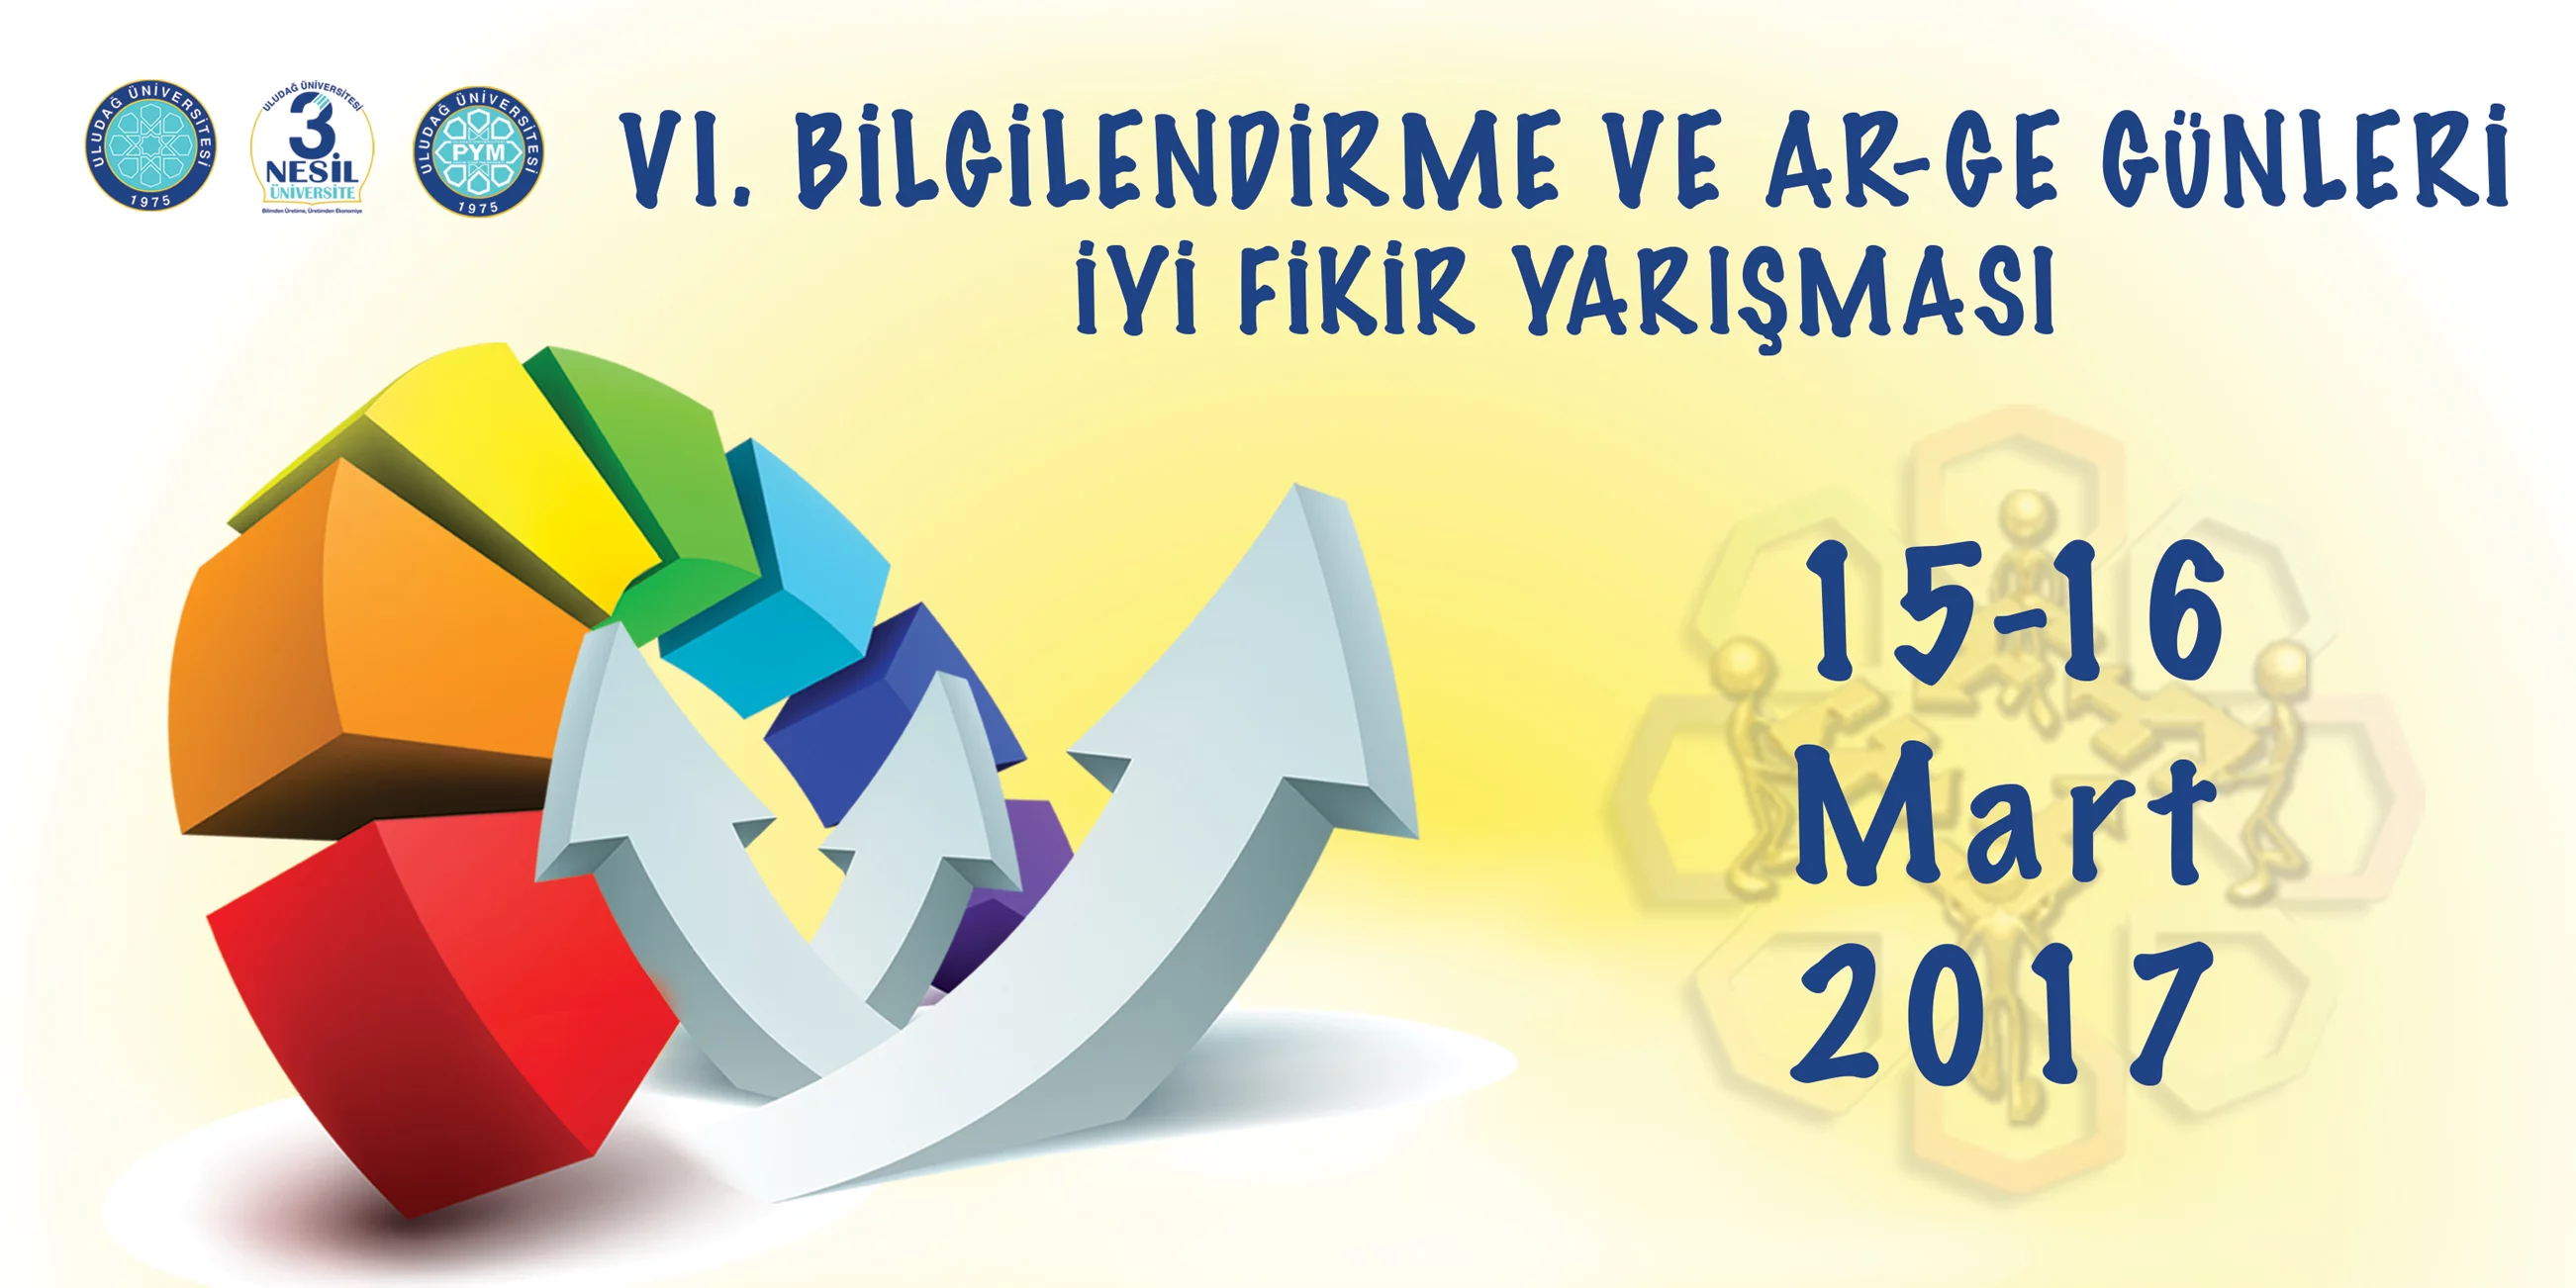 Uludağ Üniversitesi, VI. Ar-Ge Günleri’ne hazırlanıyor